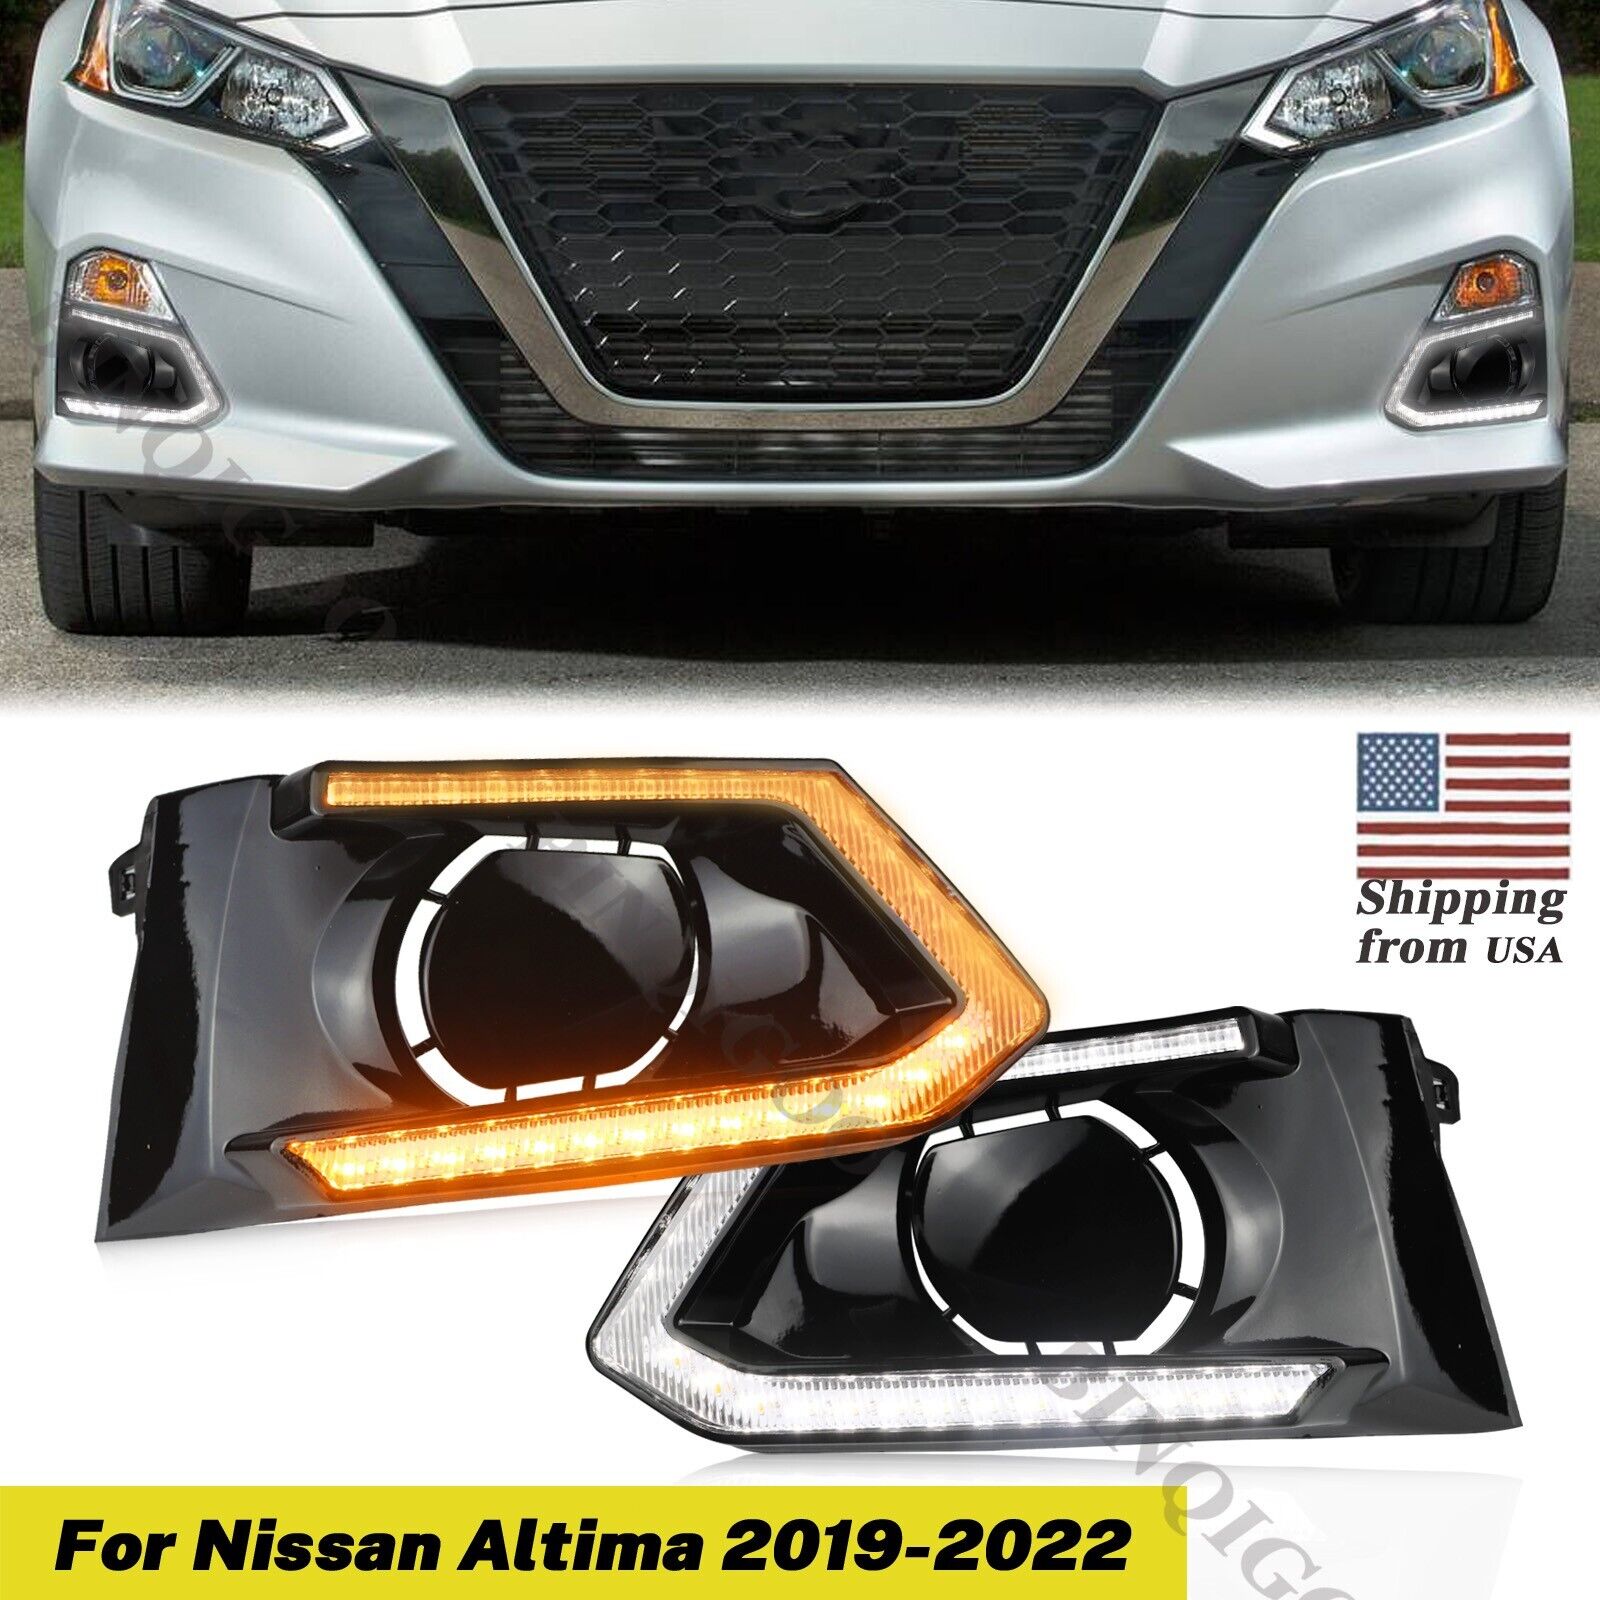 For Nissan Altima 2019-2022 DRL LED Daytime Running Fog Light Turn Signal Lamp